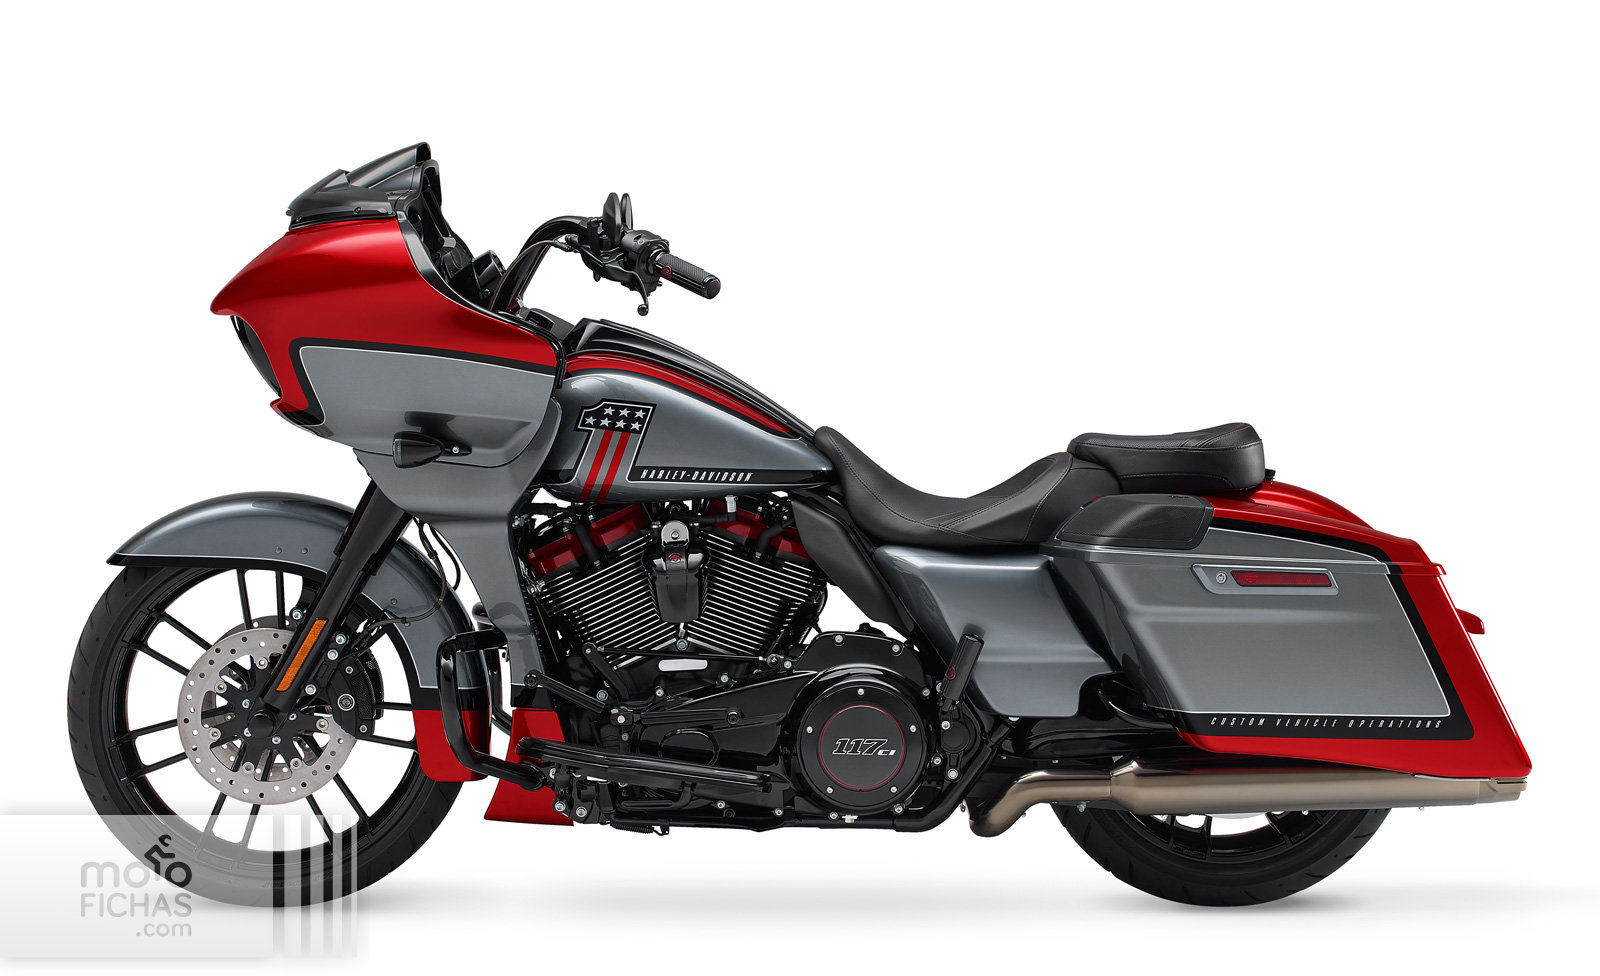 Harley Davidson Cvo Street Glide 2020 Precio Ficha Opiniones Y Ofertas